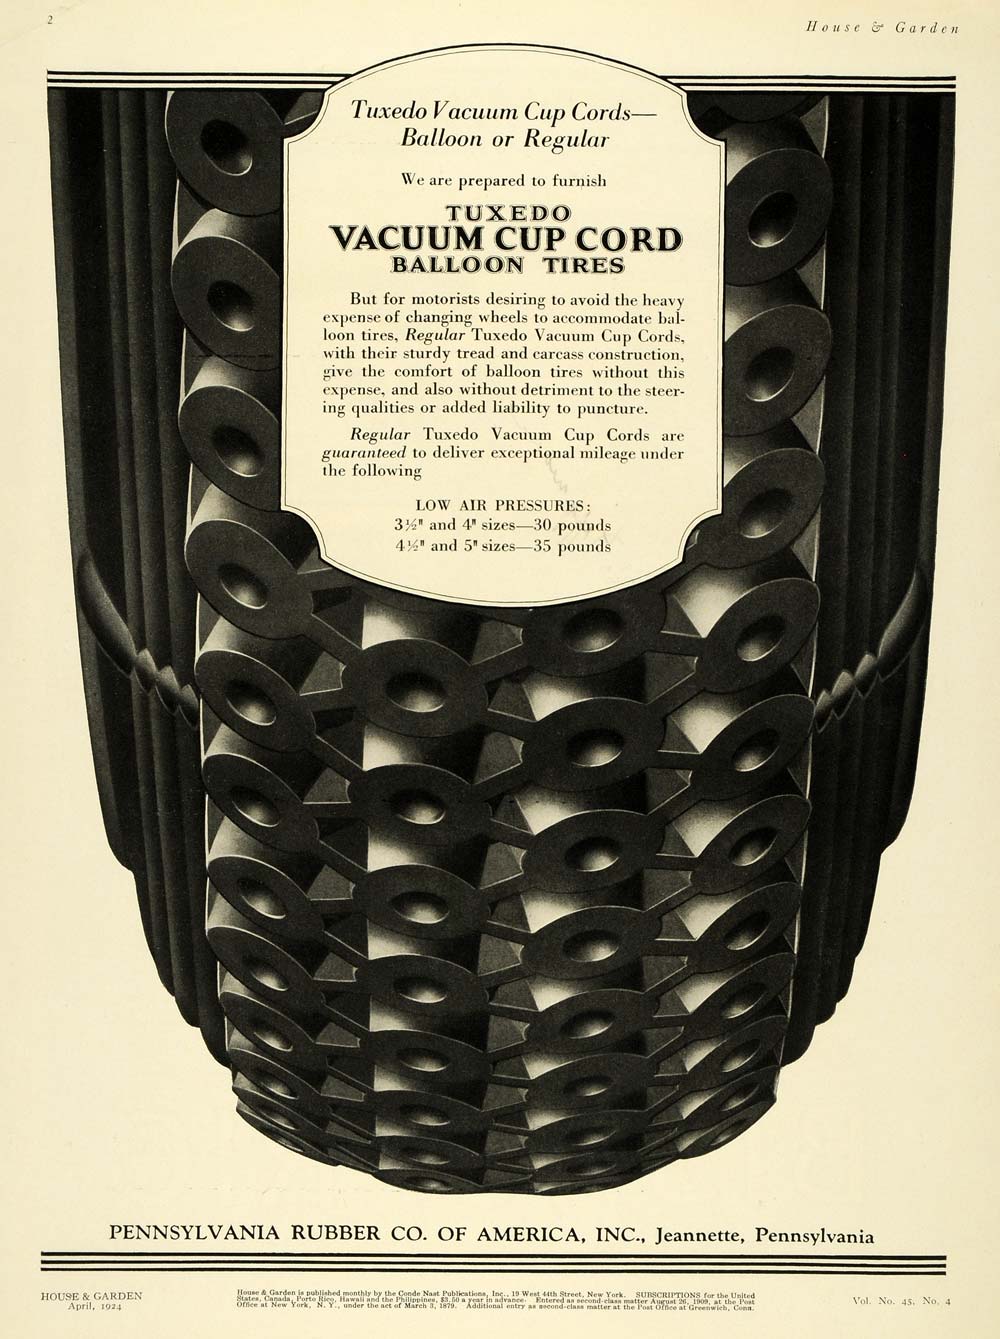 1924 Ad Pennyslvania Rubber Tux Cup Cord Balloon Tires - ORIGINAL HG1